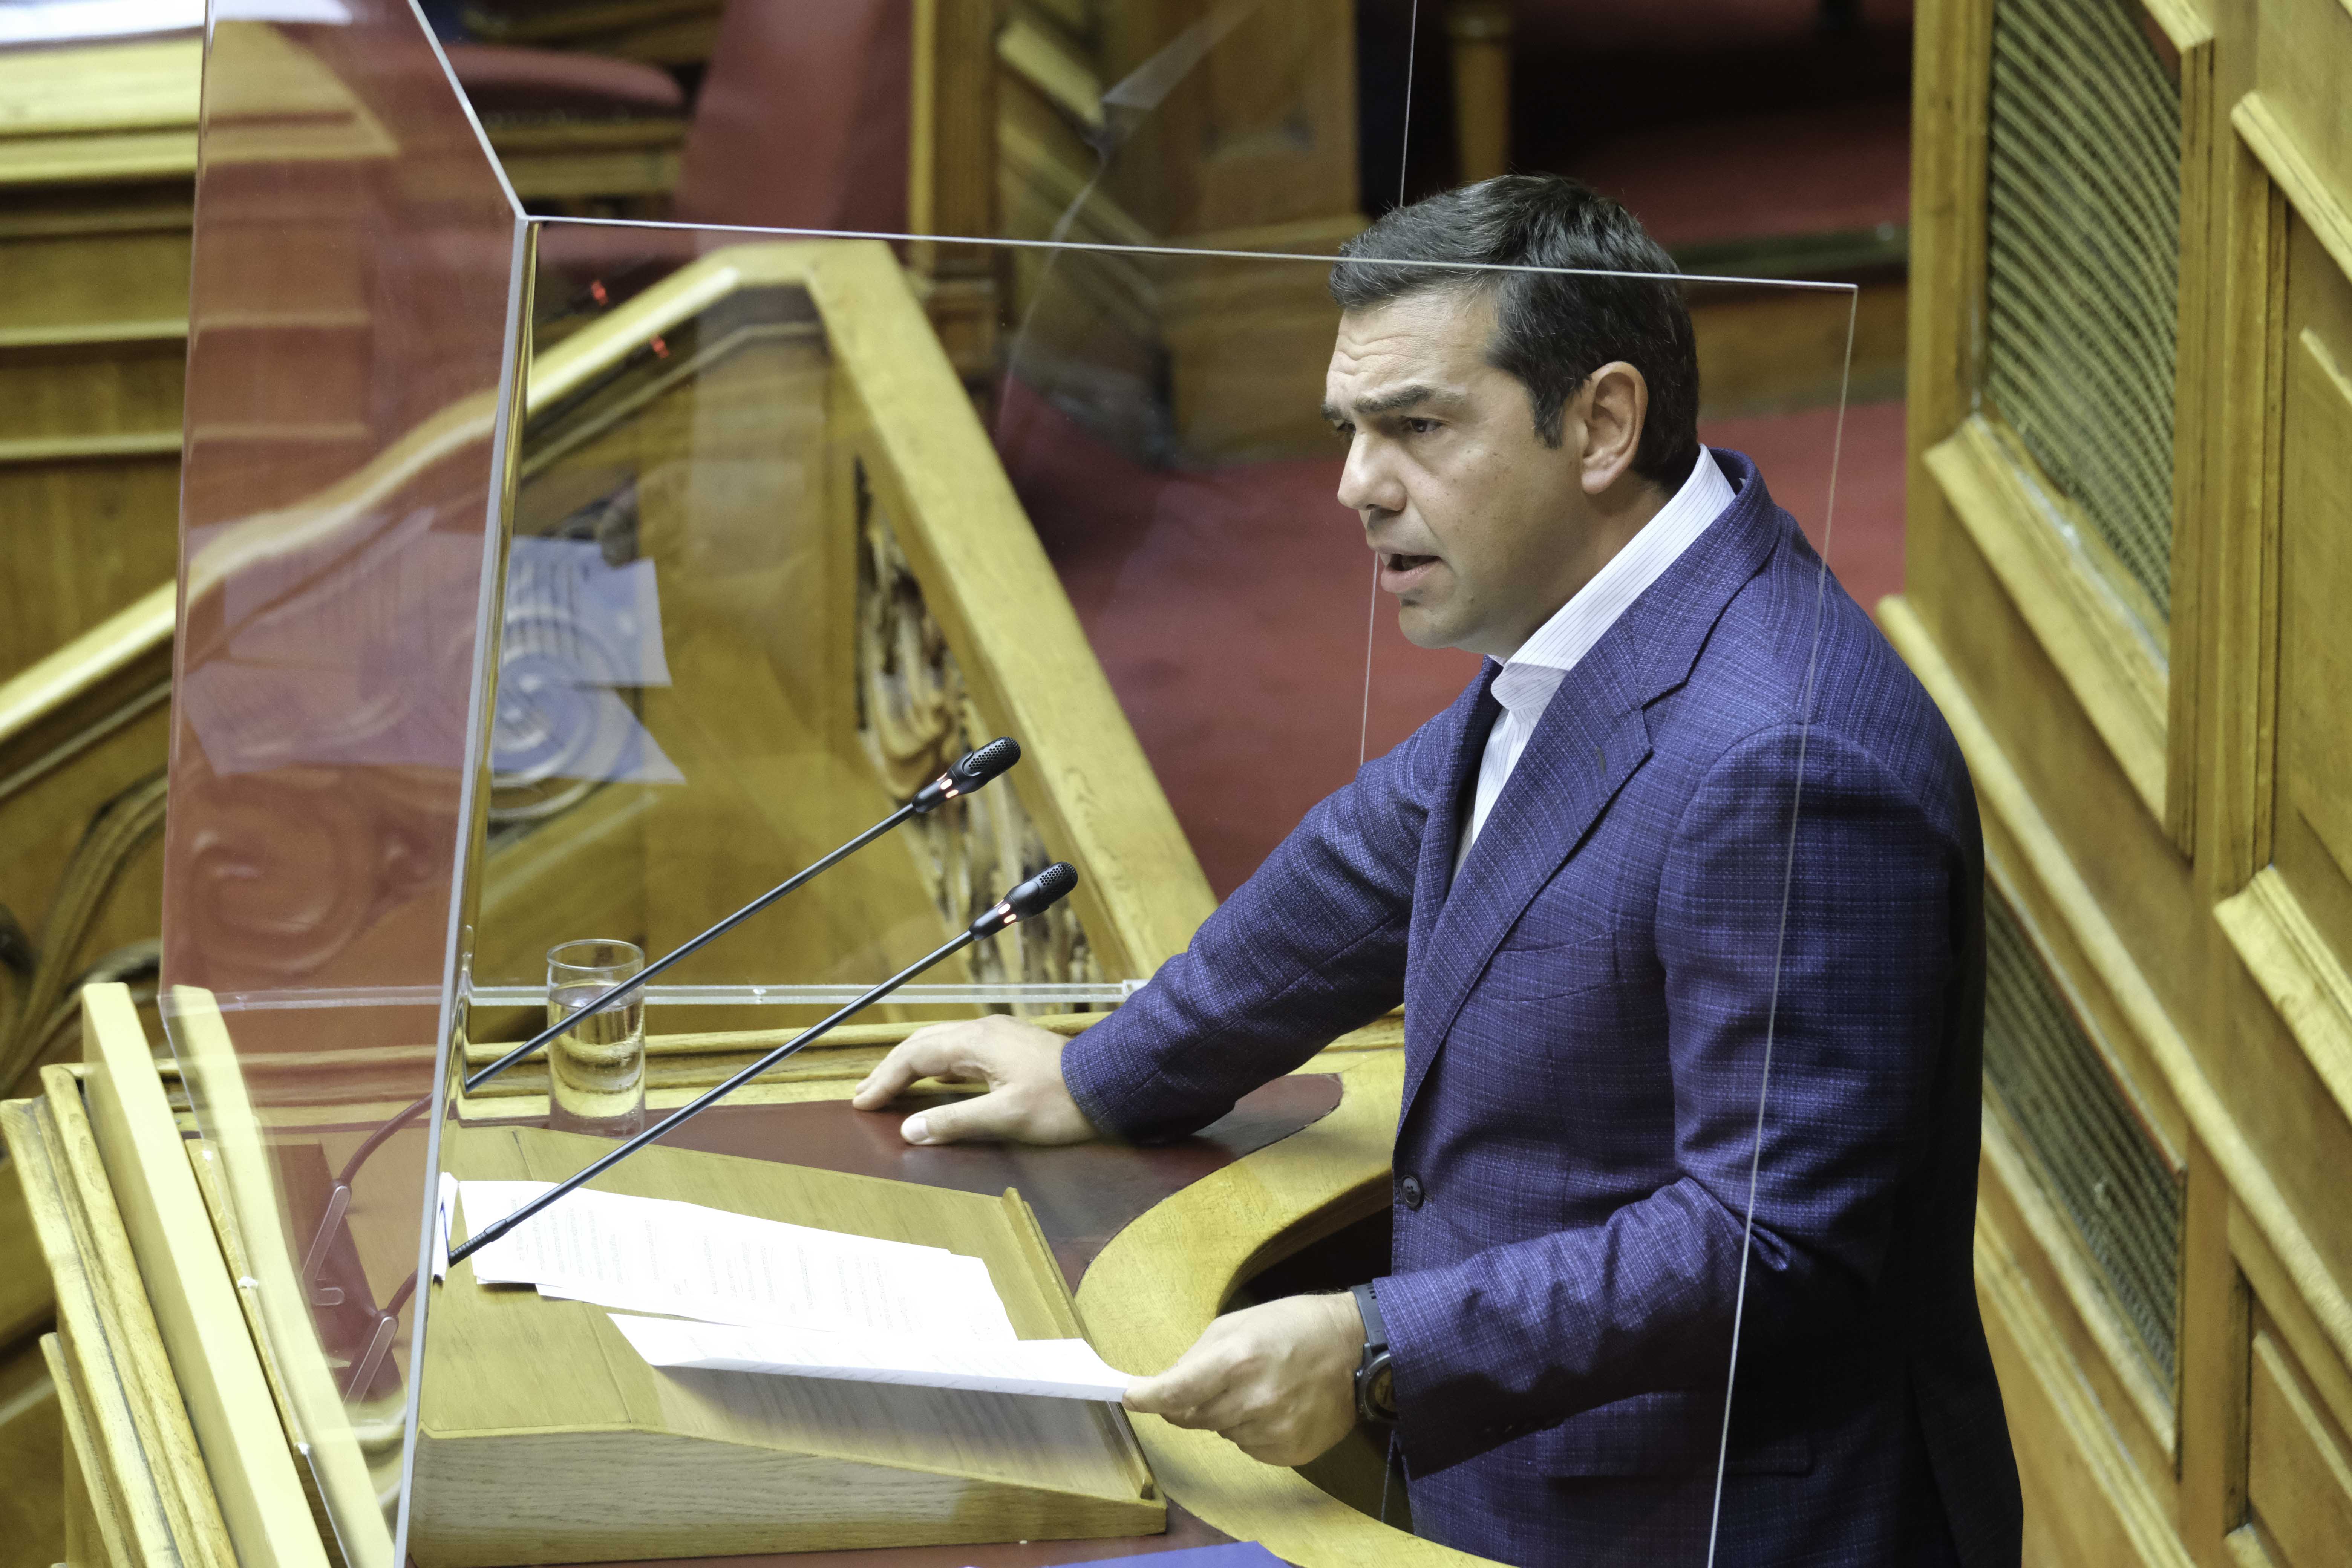 Αλ. Τσίπρας: Αίτημα για διεξαγωγή έκτακτης συζήτησης στη Βουλή - Η Δημοκρατία όταν απειλείται δεν κάνει διακοπές